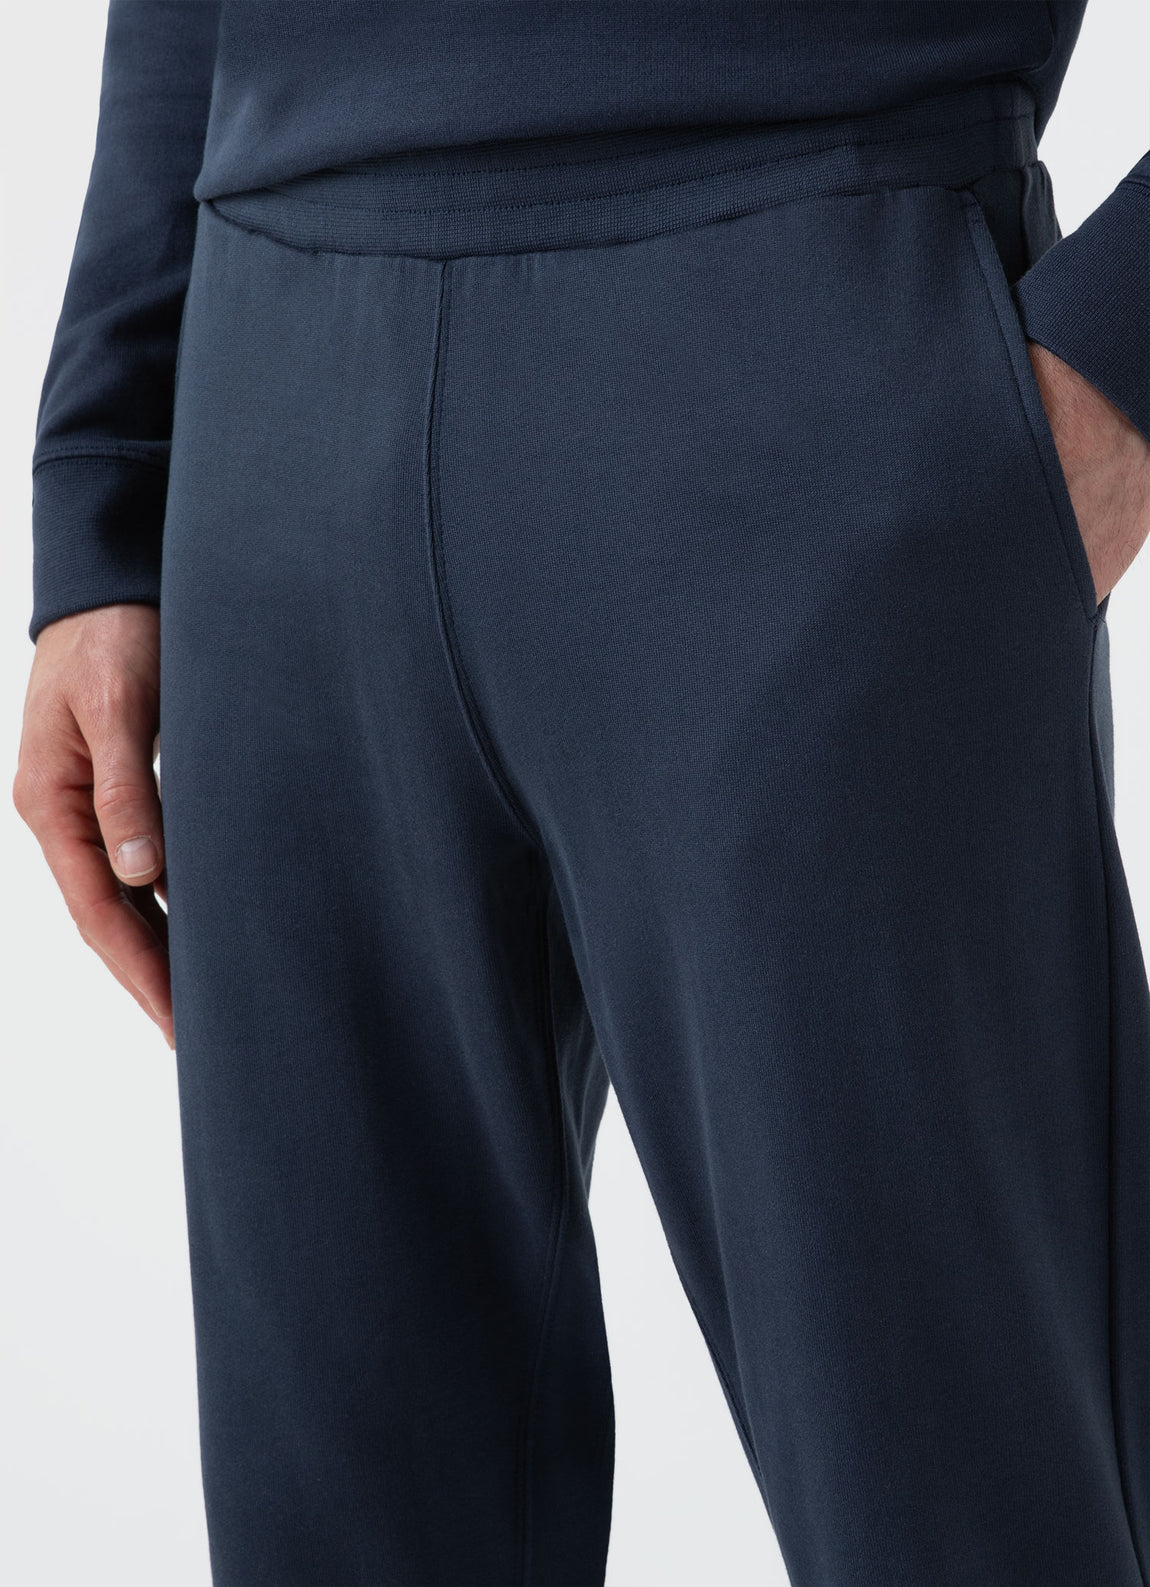 Men's Sea Island Cotton Sweatpants in Navy | Sunspel